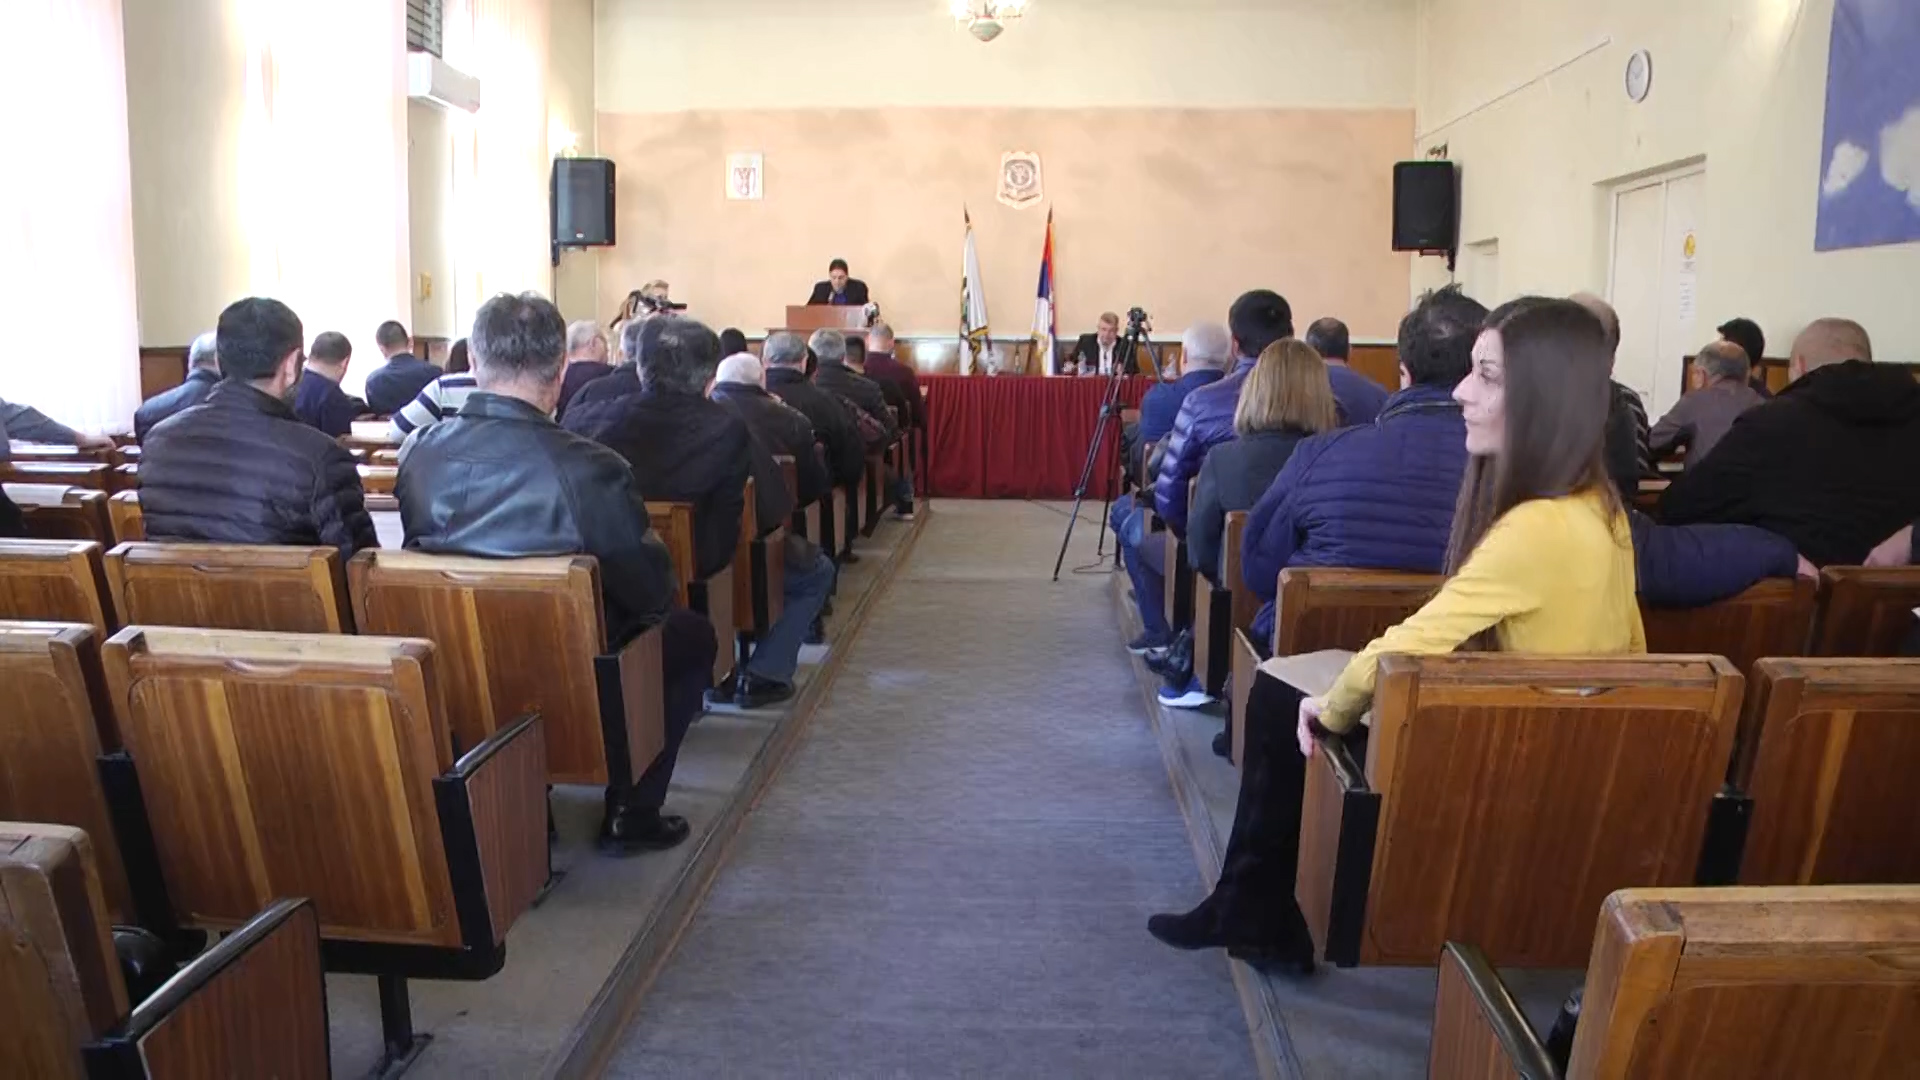 Usvojen je novi Statut opštine Negotin i lokalni akcioni plan zapošljavanja za 2019. godinu.